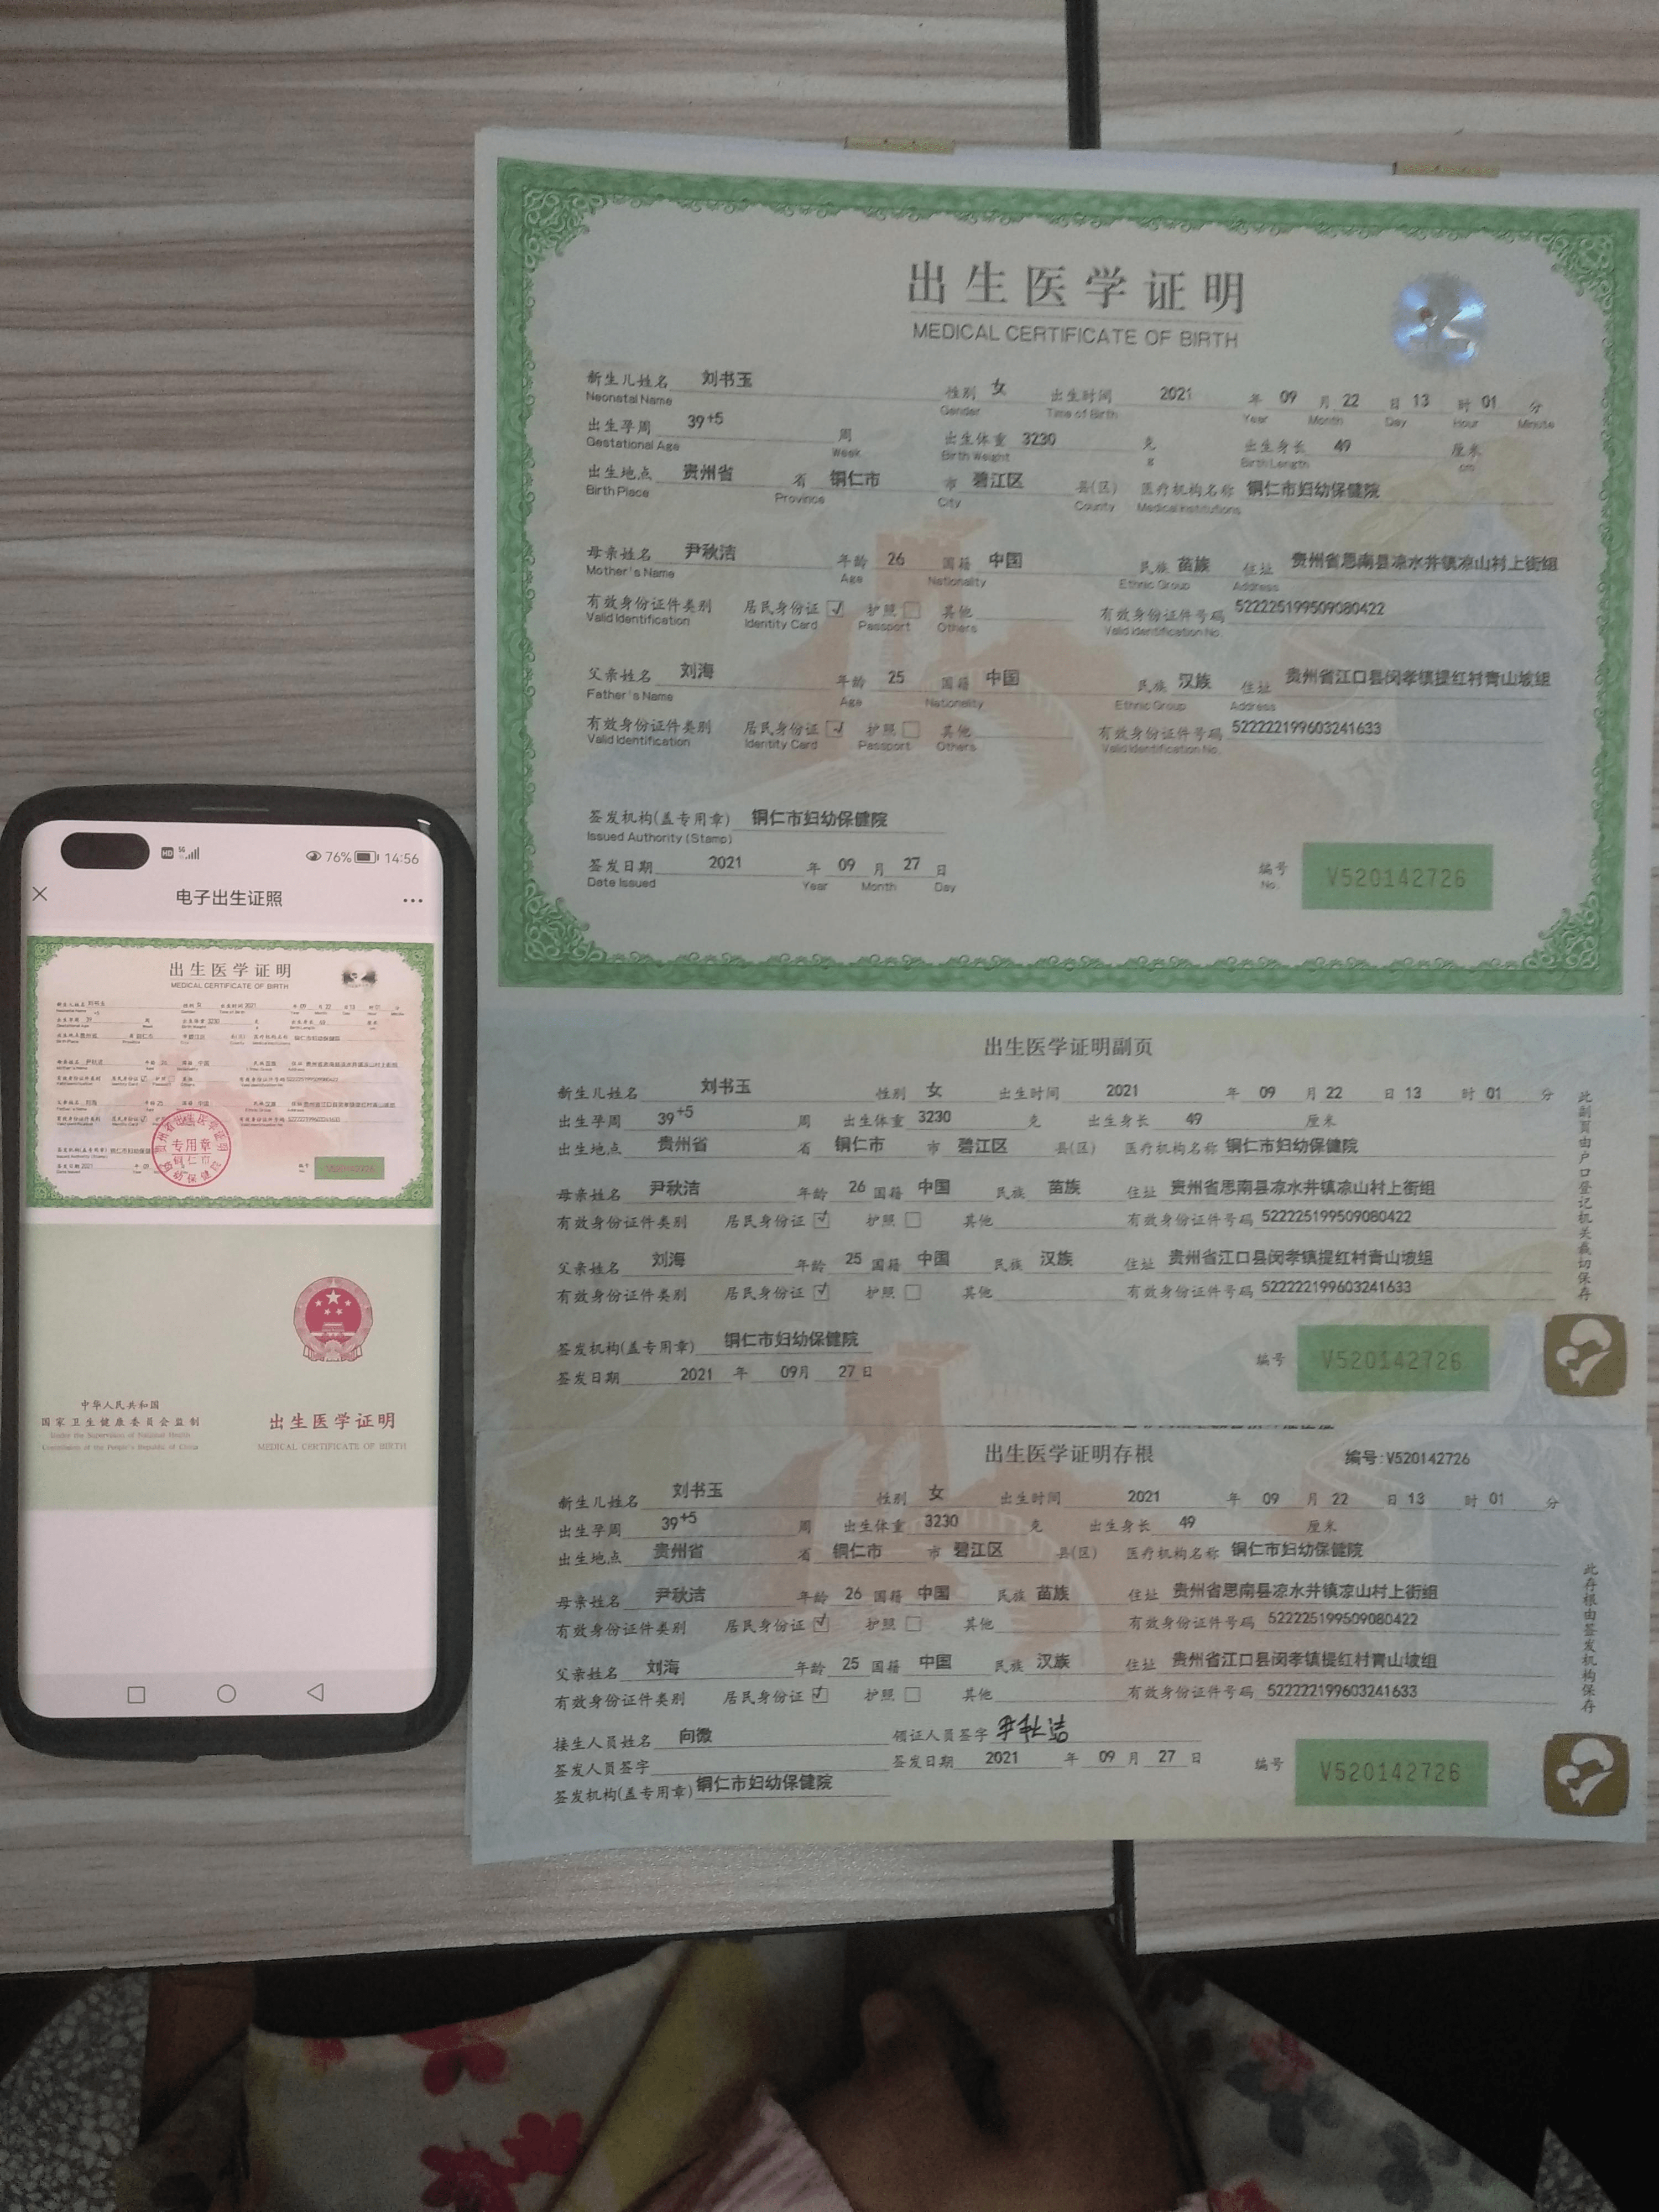 贵州省首张出生医学证明电子证照签发标志着出生医学证明电子化时代到